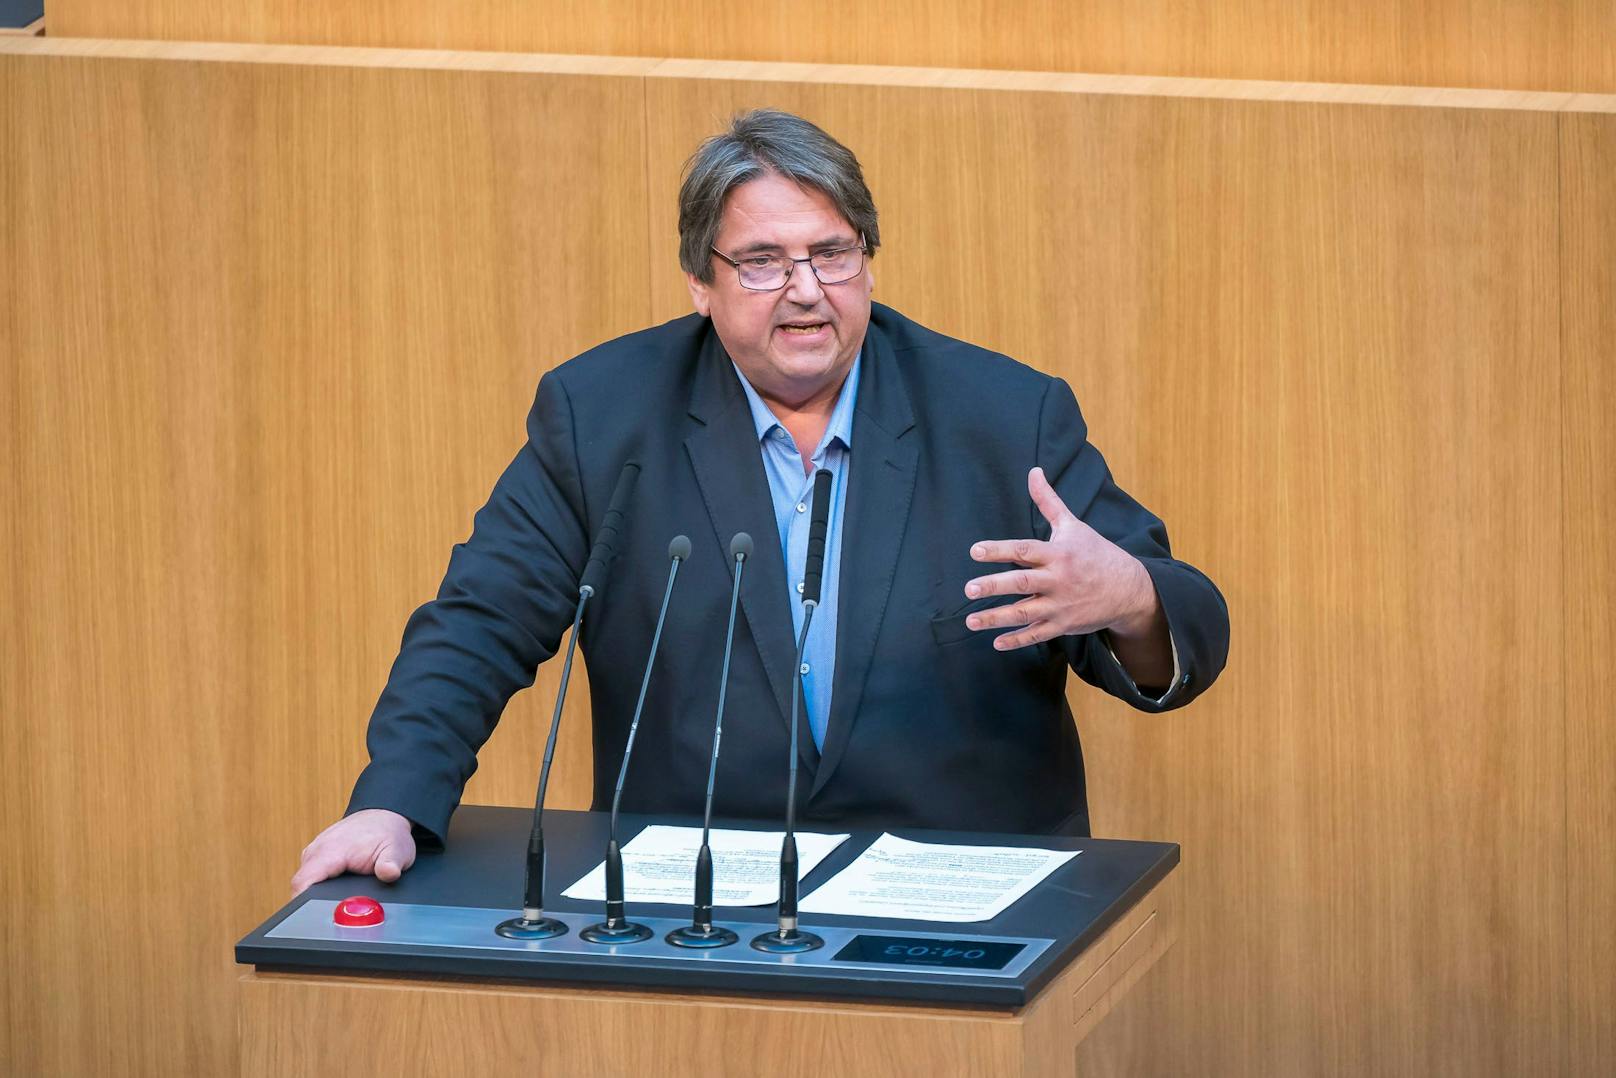 Der SPÖ-Abgeordnete Josef Muchitsch teilt gehörig gegen die Regierung aus. 